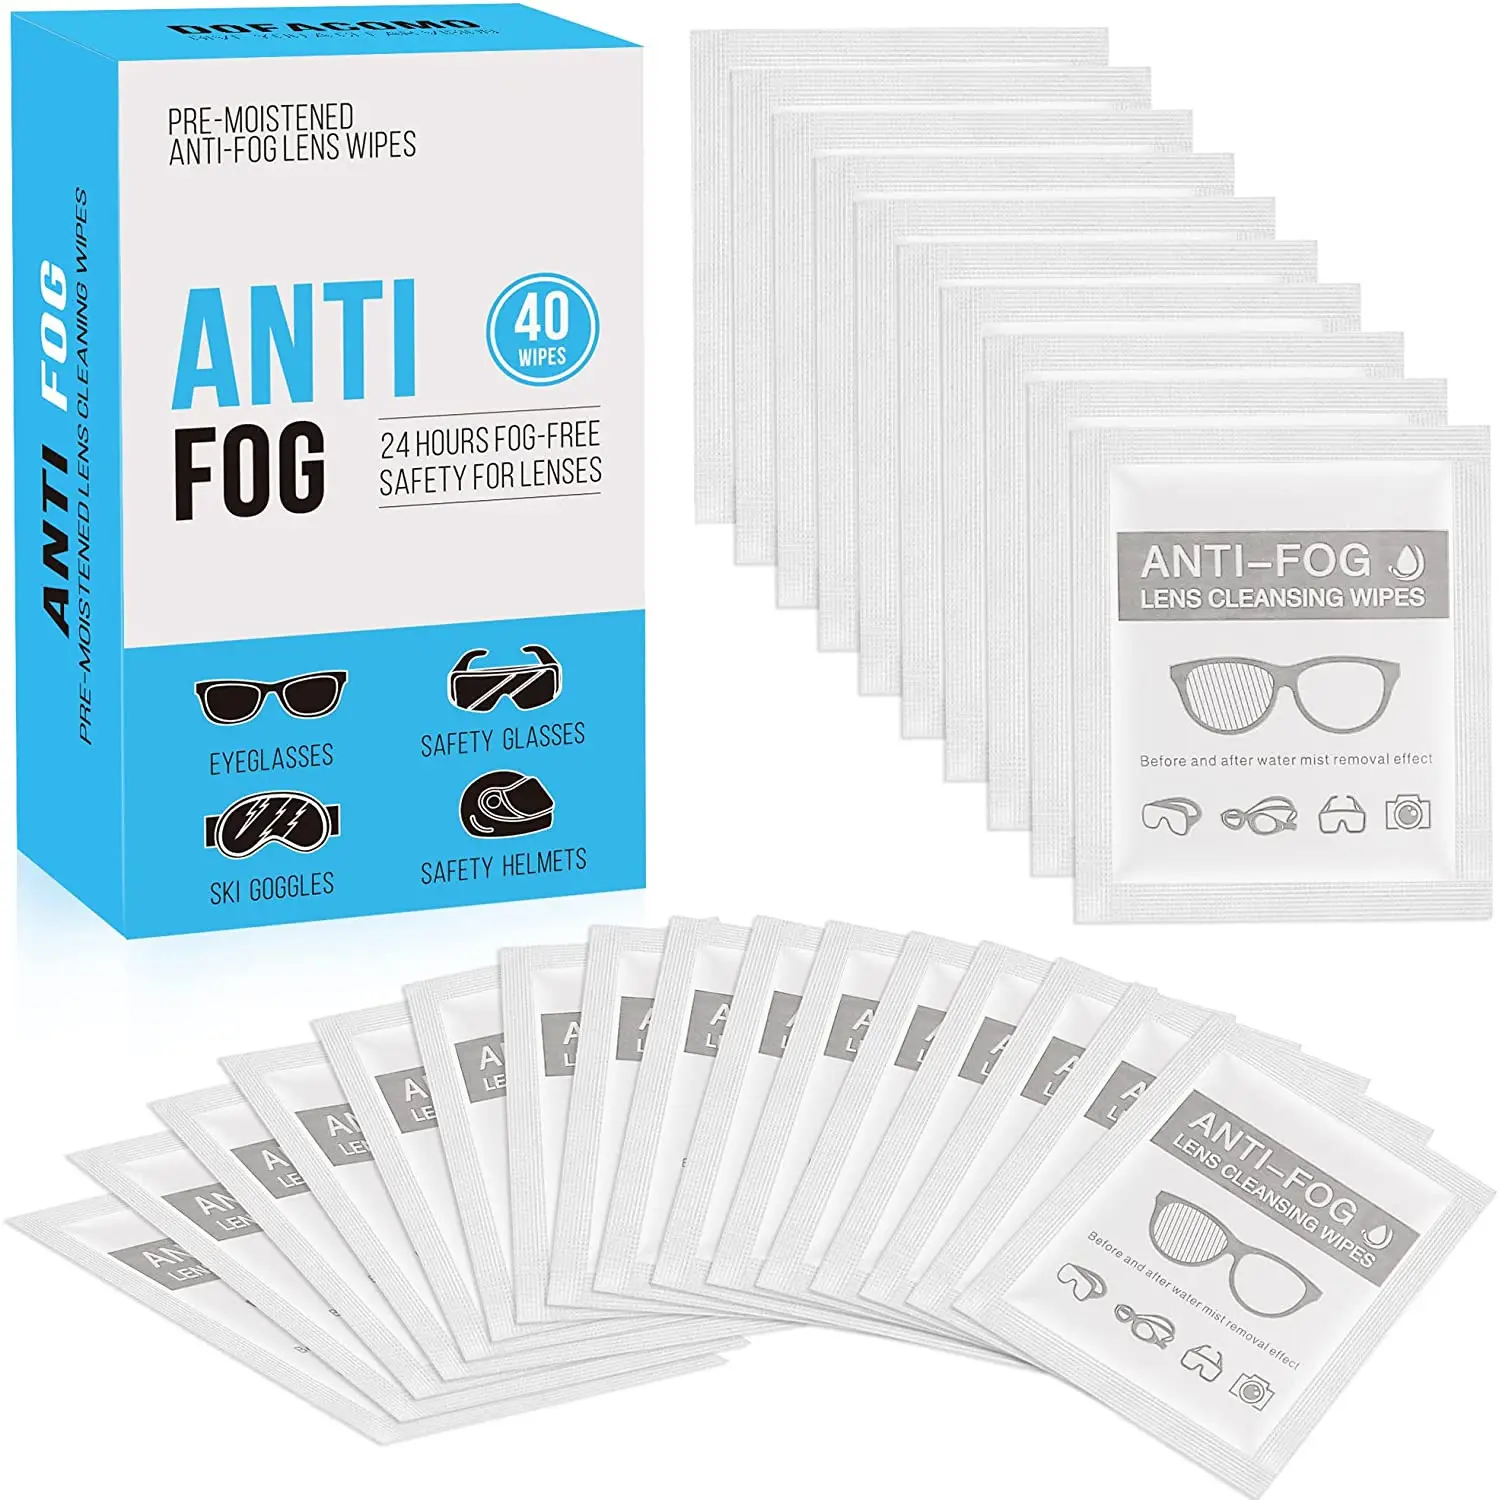 Anti-Fog Wipe Pre-moistened Wipes for Glasses, Binoculars, Face Shields, Ski Masks Fogging on Glass